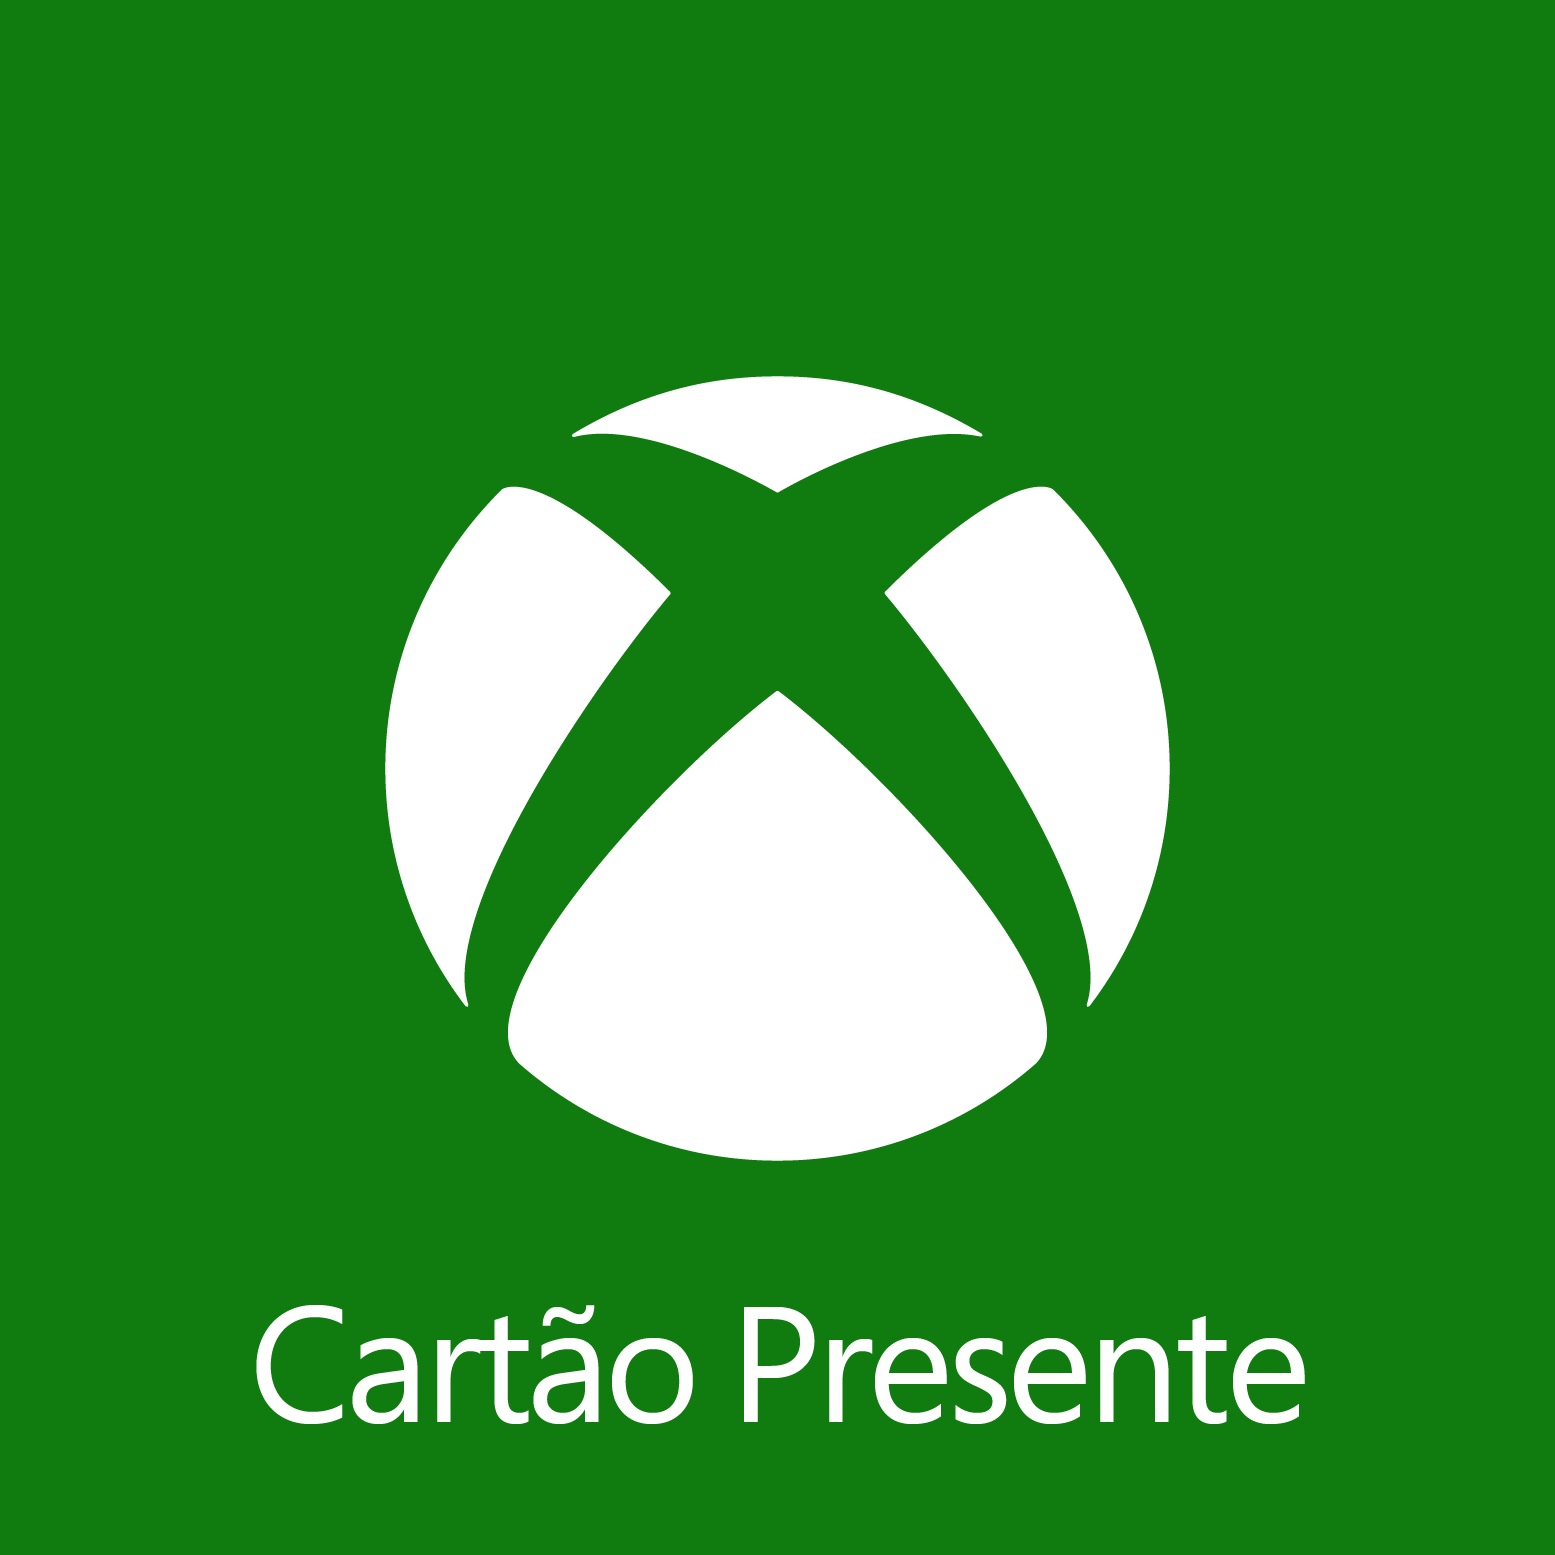 Comprar Cartão EA Play Xbox One - Assinatura de 1 Mês